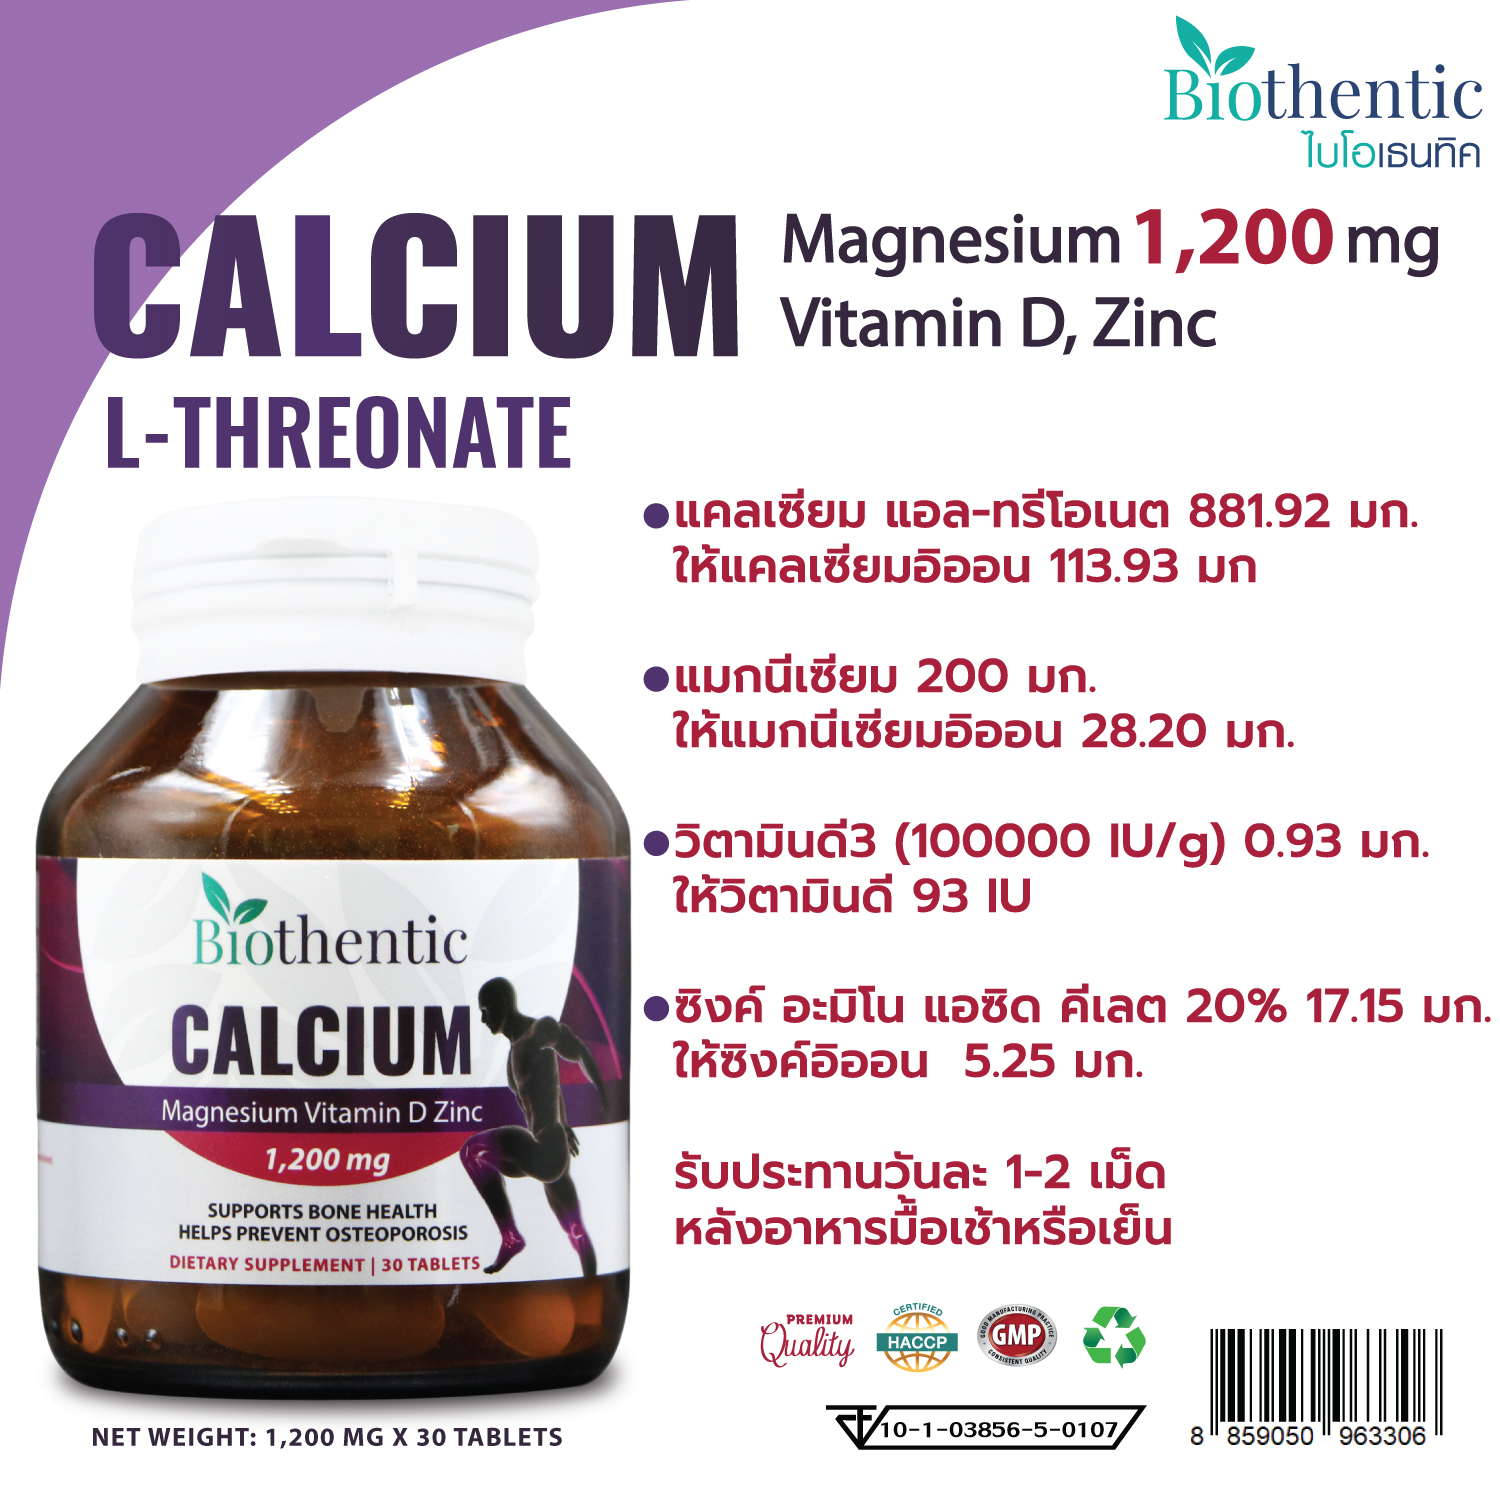 แคลเซียม แอล-ทรีโอเนต พลัส แมกนีเซียม วิตามินดี ซิงค์ x 1 ขวด ไบโอเธนทิค Calcium L-Threonate Plus Magnesium Vitamin D Zinc Biothentic แคลเซียมบำรุงกระดูก บรรจุ 30 เม็ด